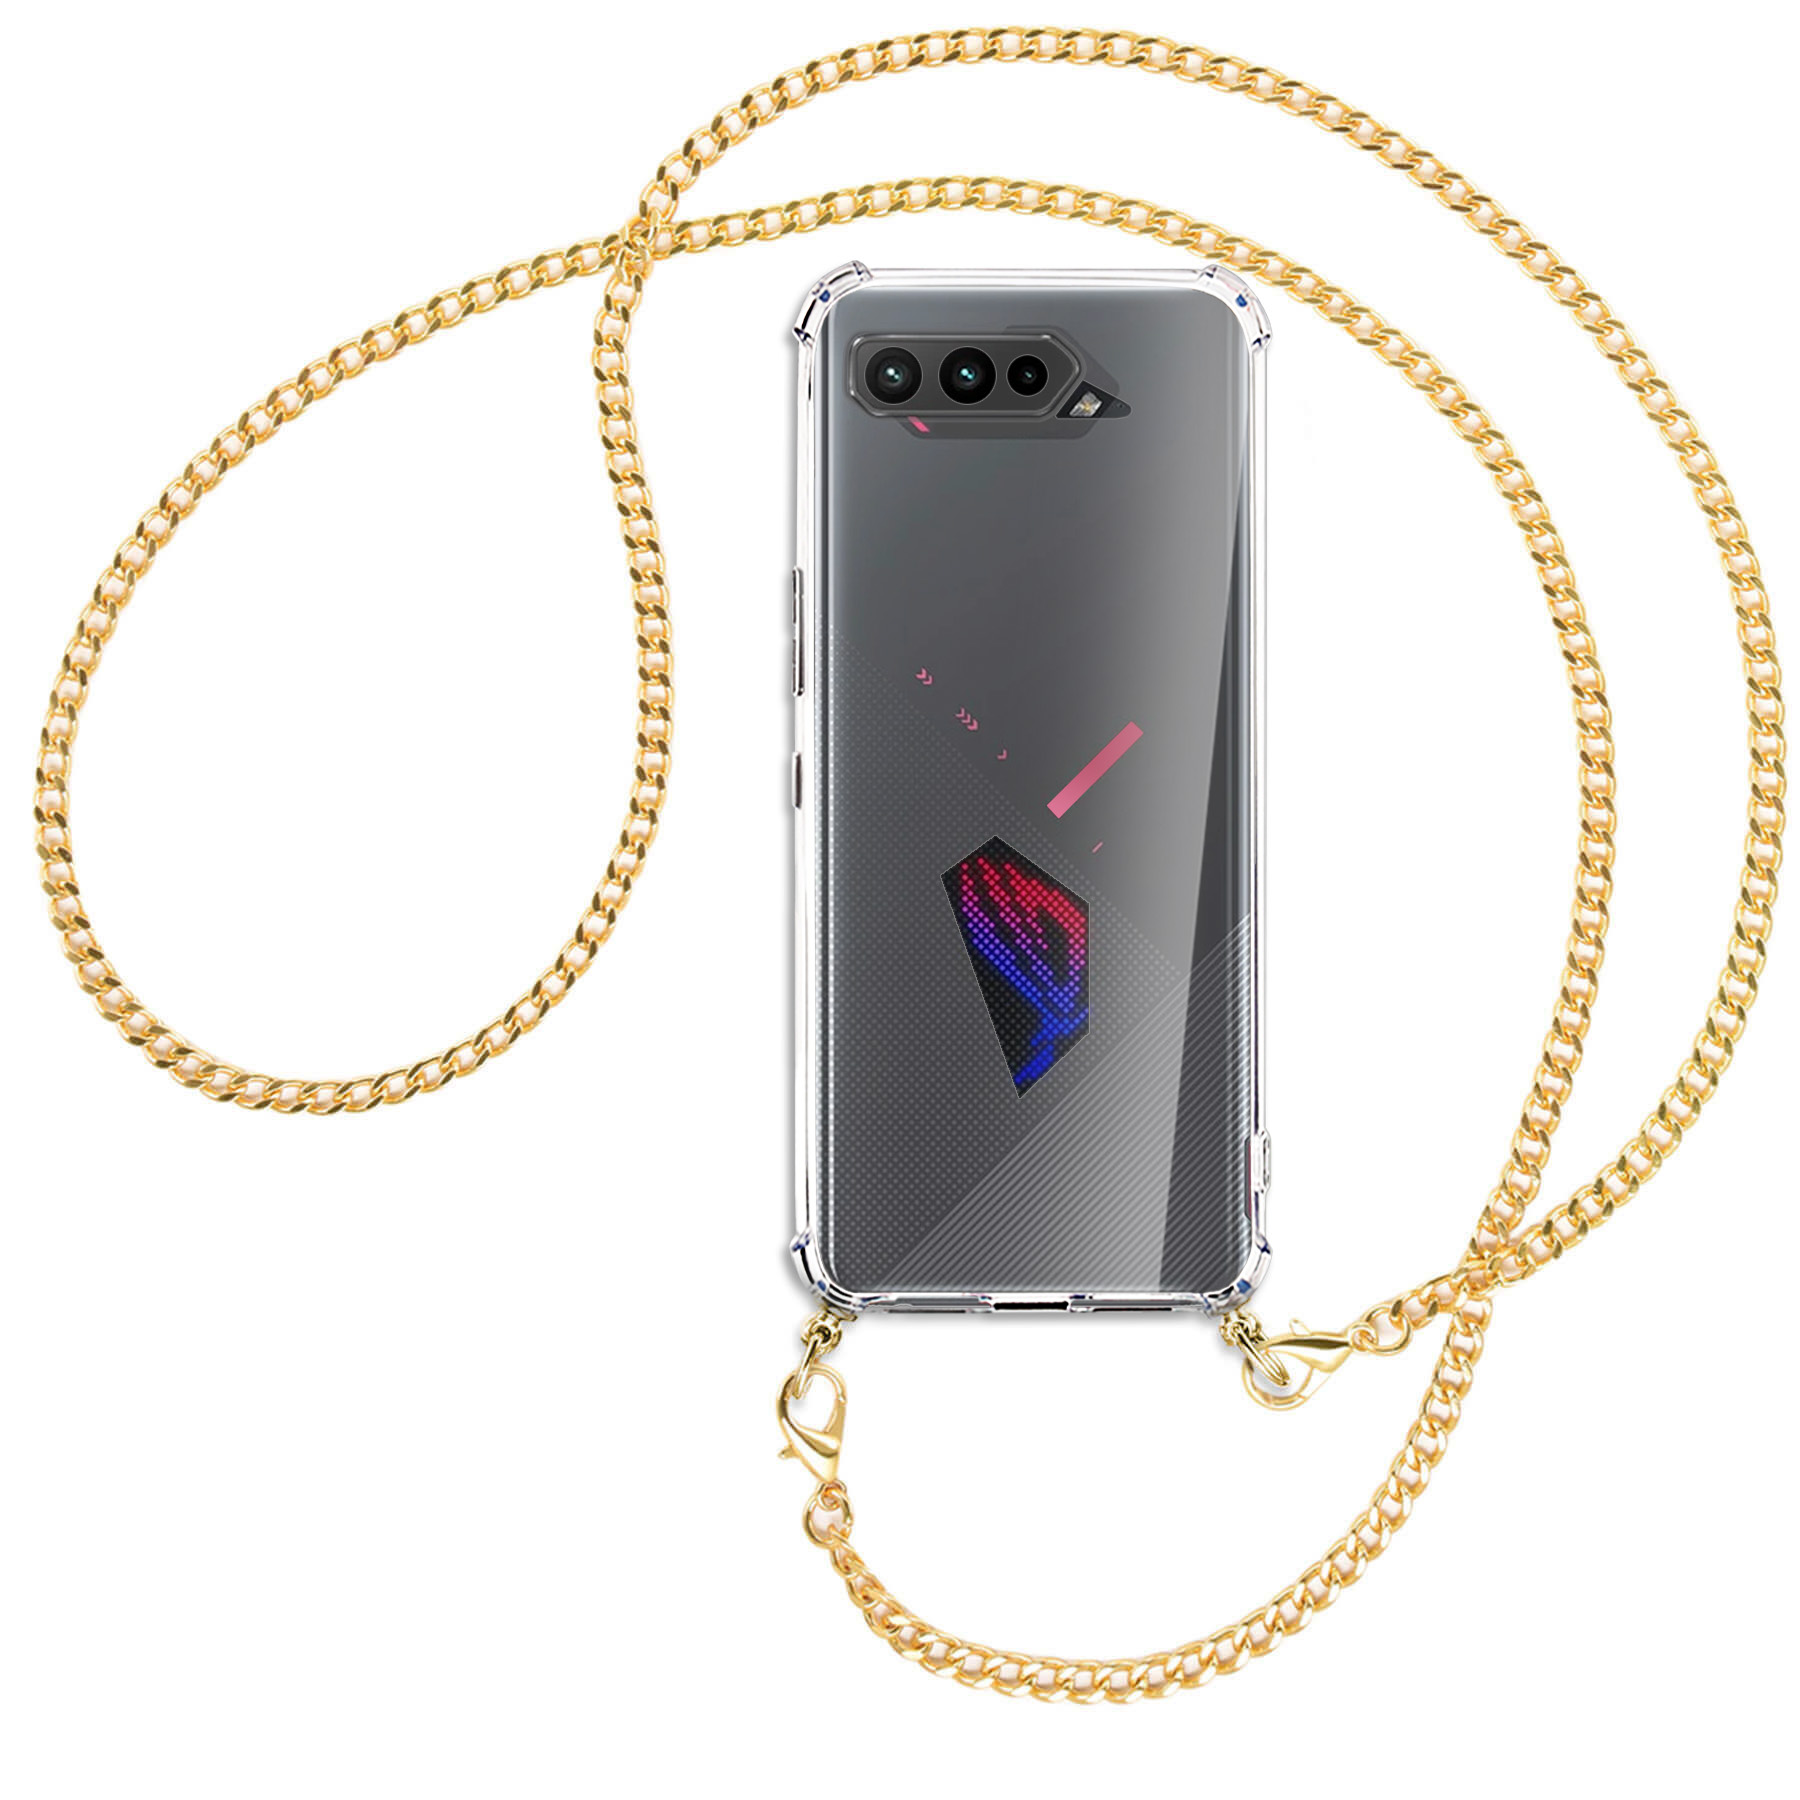 MTB MORE 5, (gold) ROG Pro, ENERGY Umhänge-Hülle Ultimate, Kette mit Phone Backcover, 5 5 Asus, Metallkette